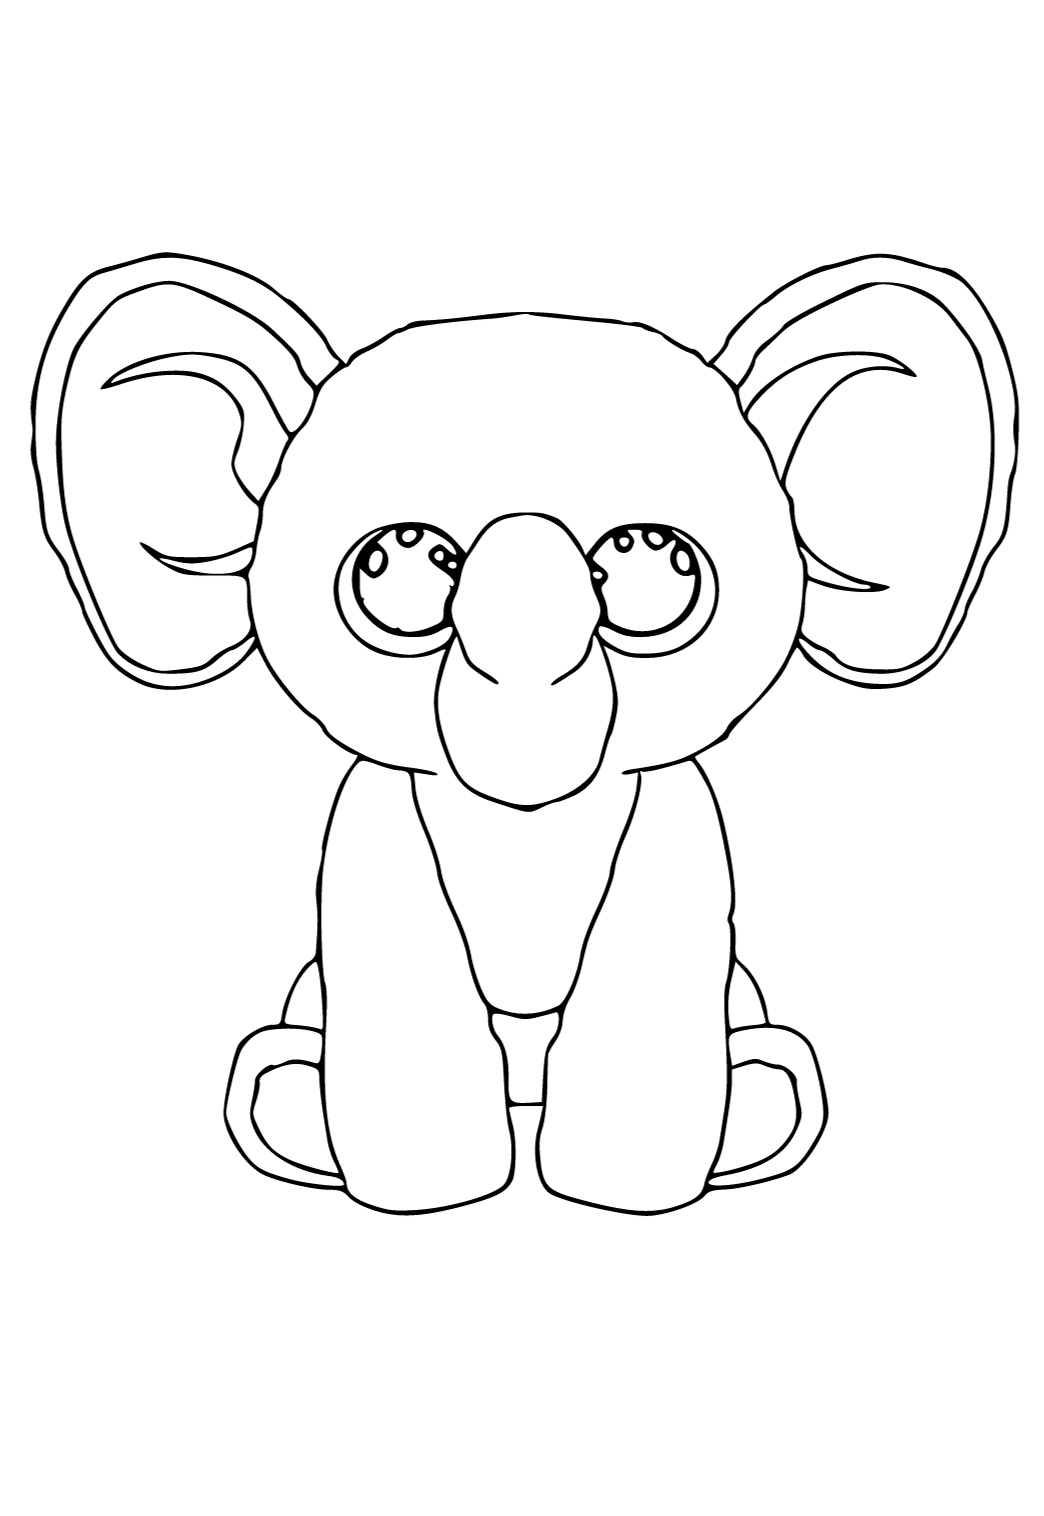 Desenho e Imagem Beanie Boo Elefante para Colorir e Imprimir